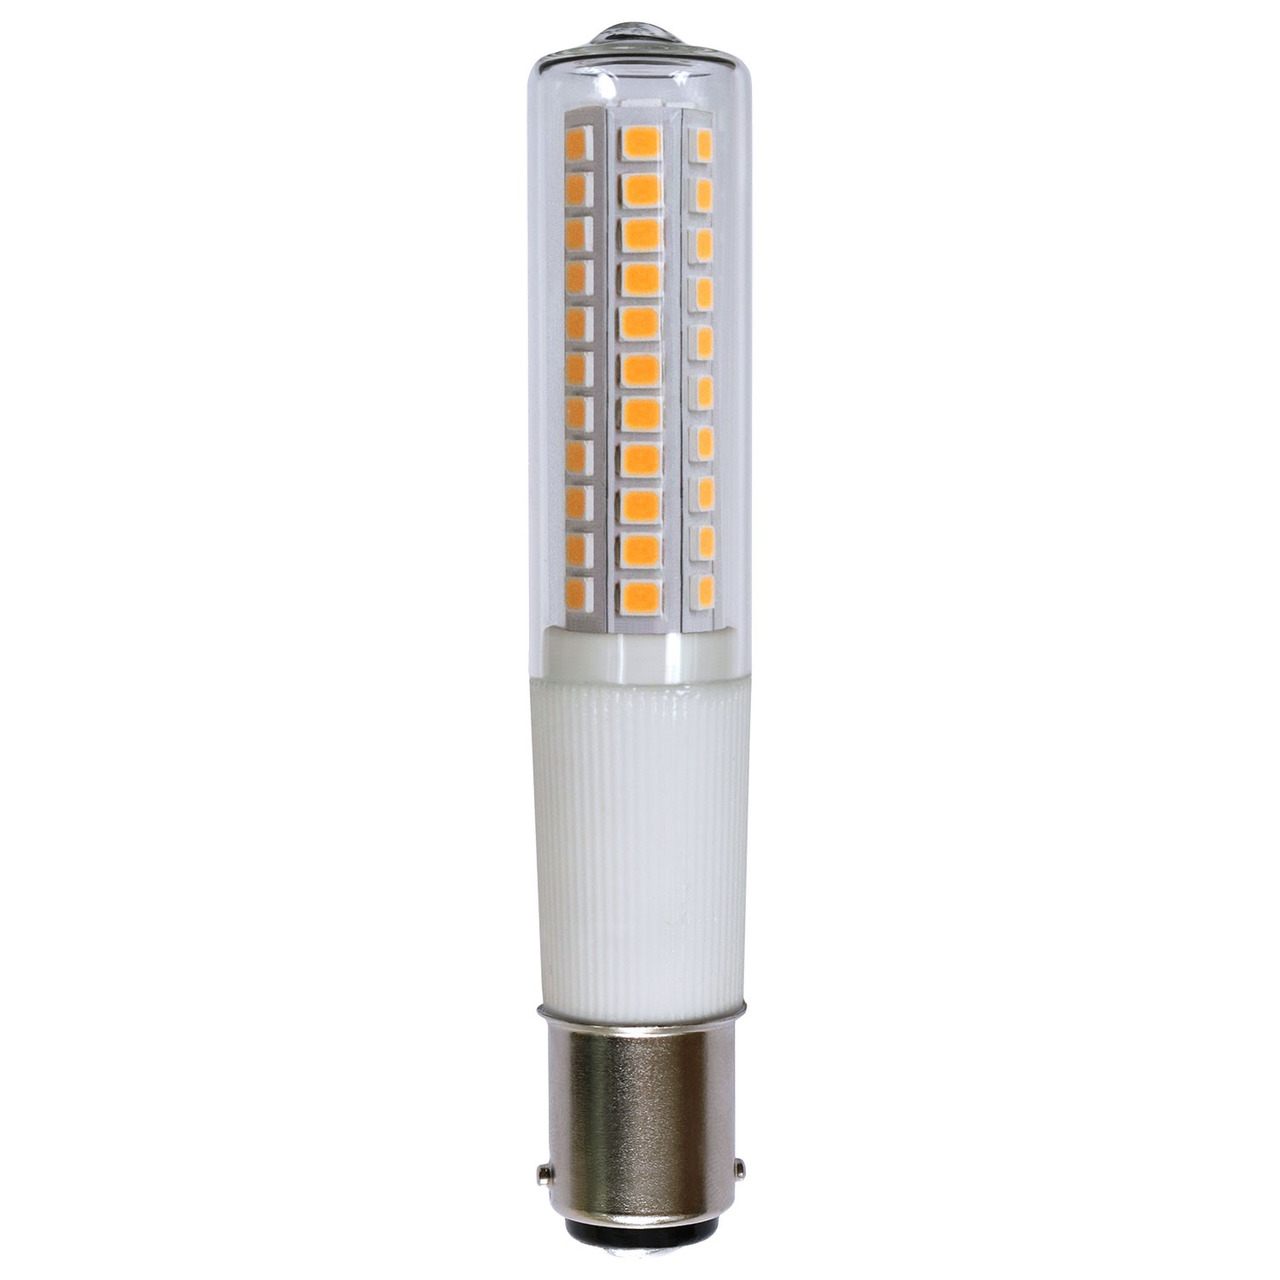 LEDmaxx 8-W-LED-Lampe T18- B15d- 840 lm- warmweiss (3000 K)- dimmbar